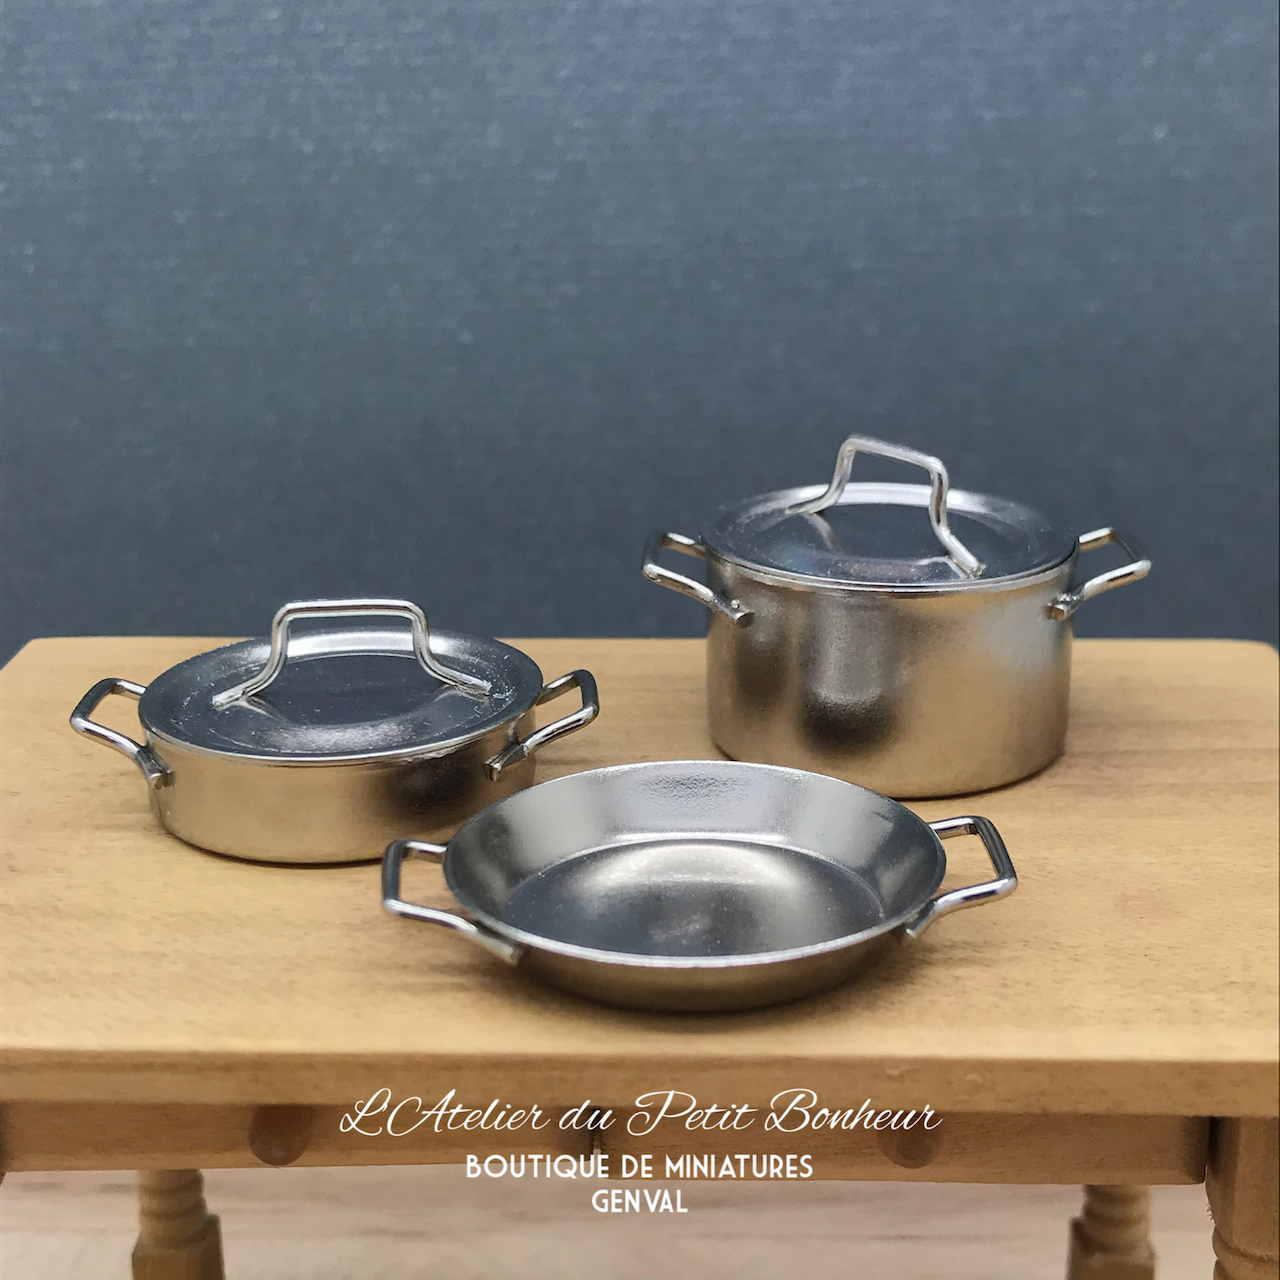 Ensemble de CUISINE VRAIE CUISINE miniature Mini poêle de cuisine mini  casseroles et poêles pour cuisiner de vrais aliments -  France